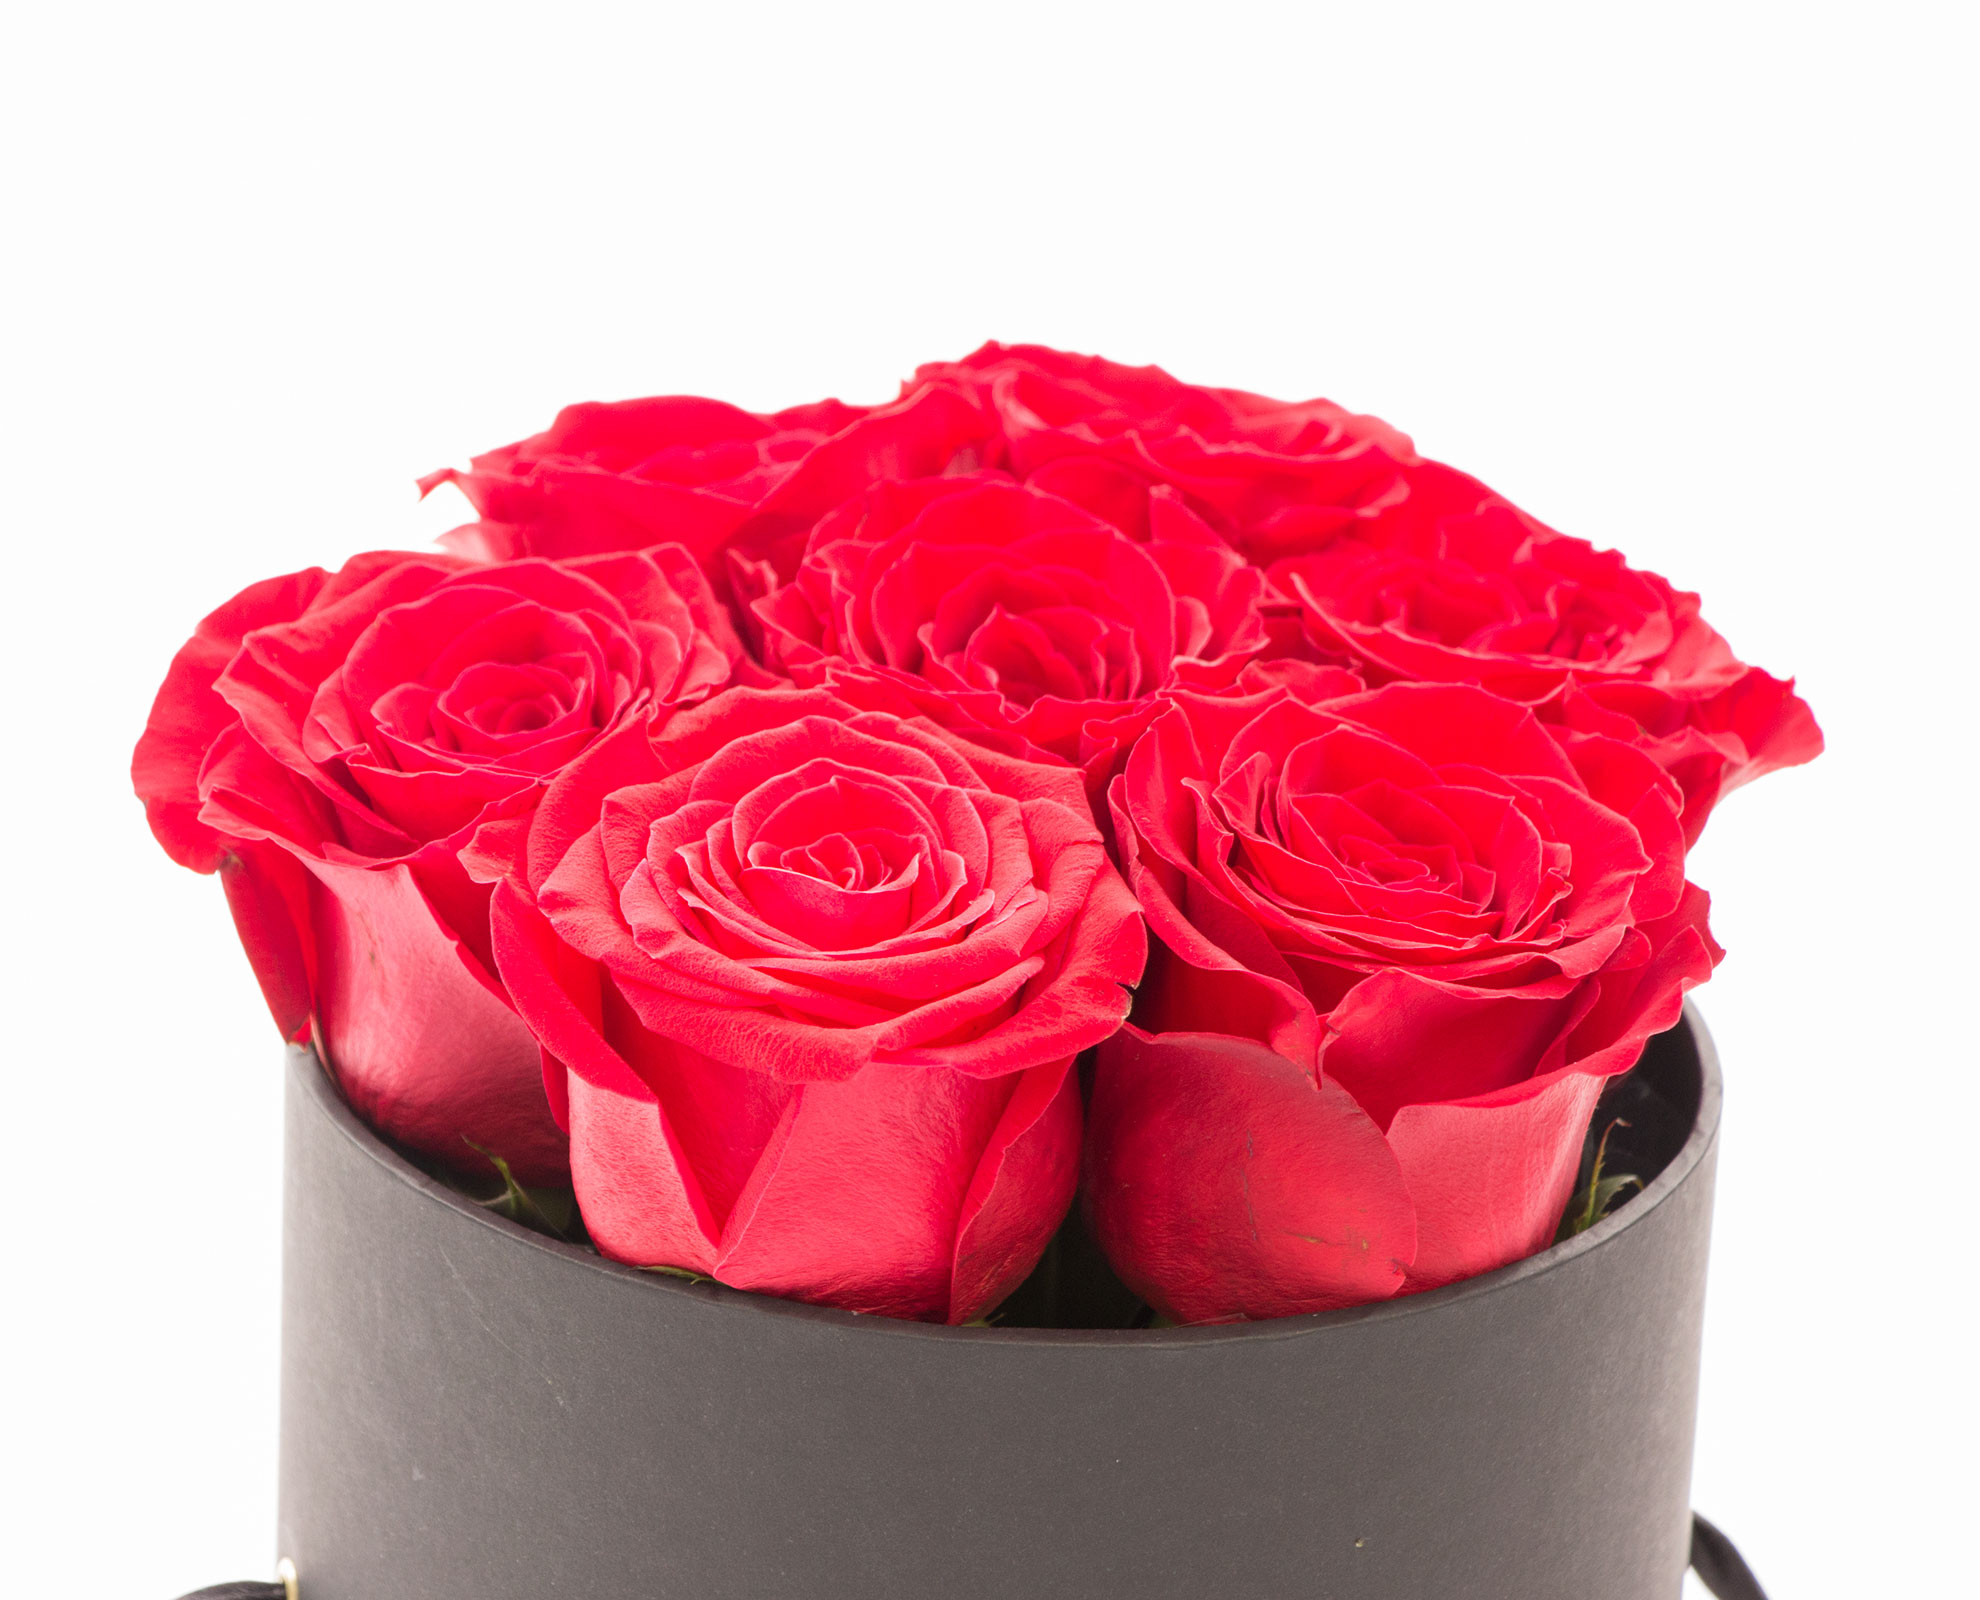 Cutie 9 trandafiri rosii si vin Tralca